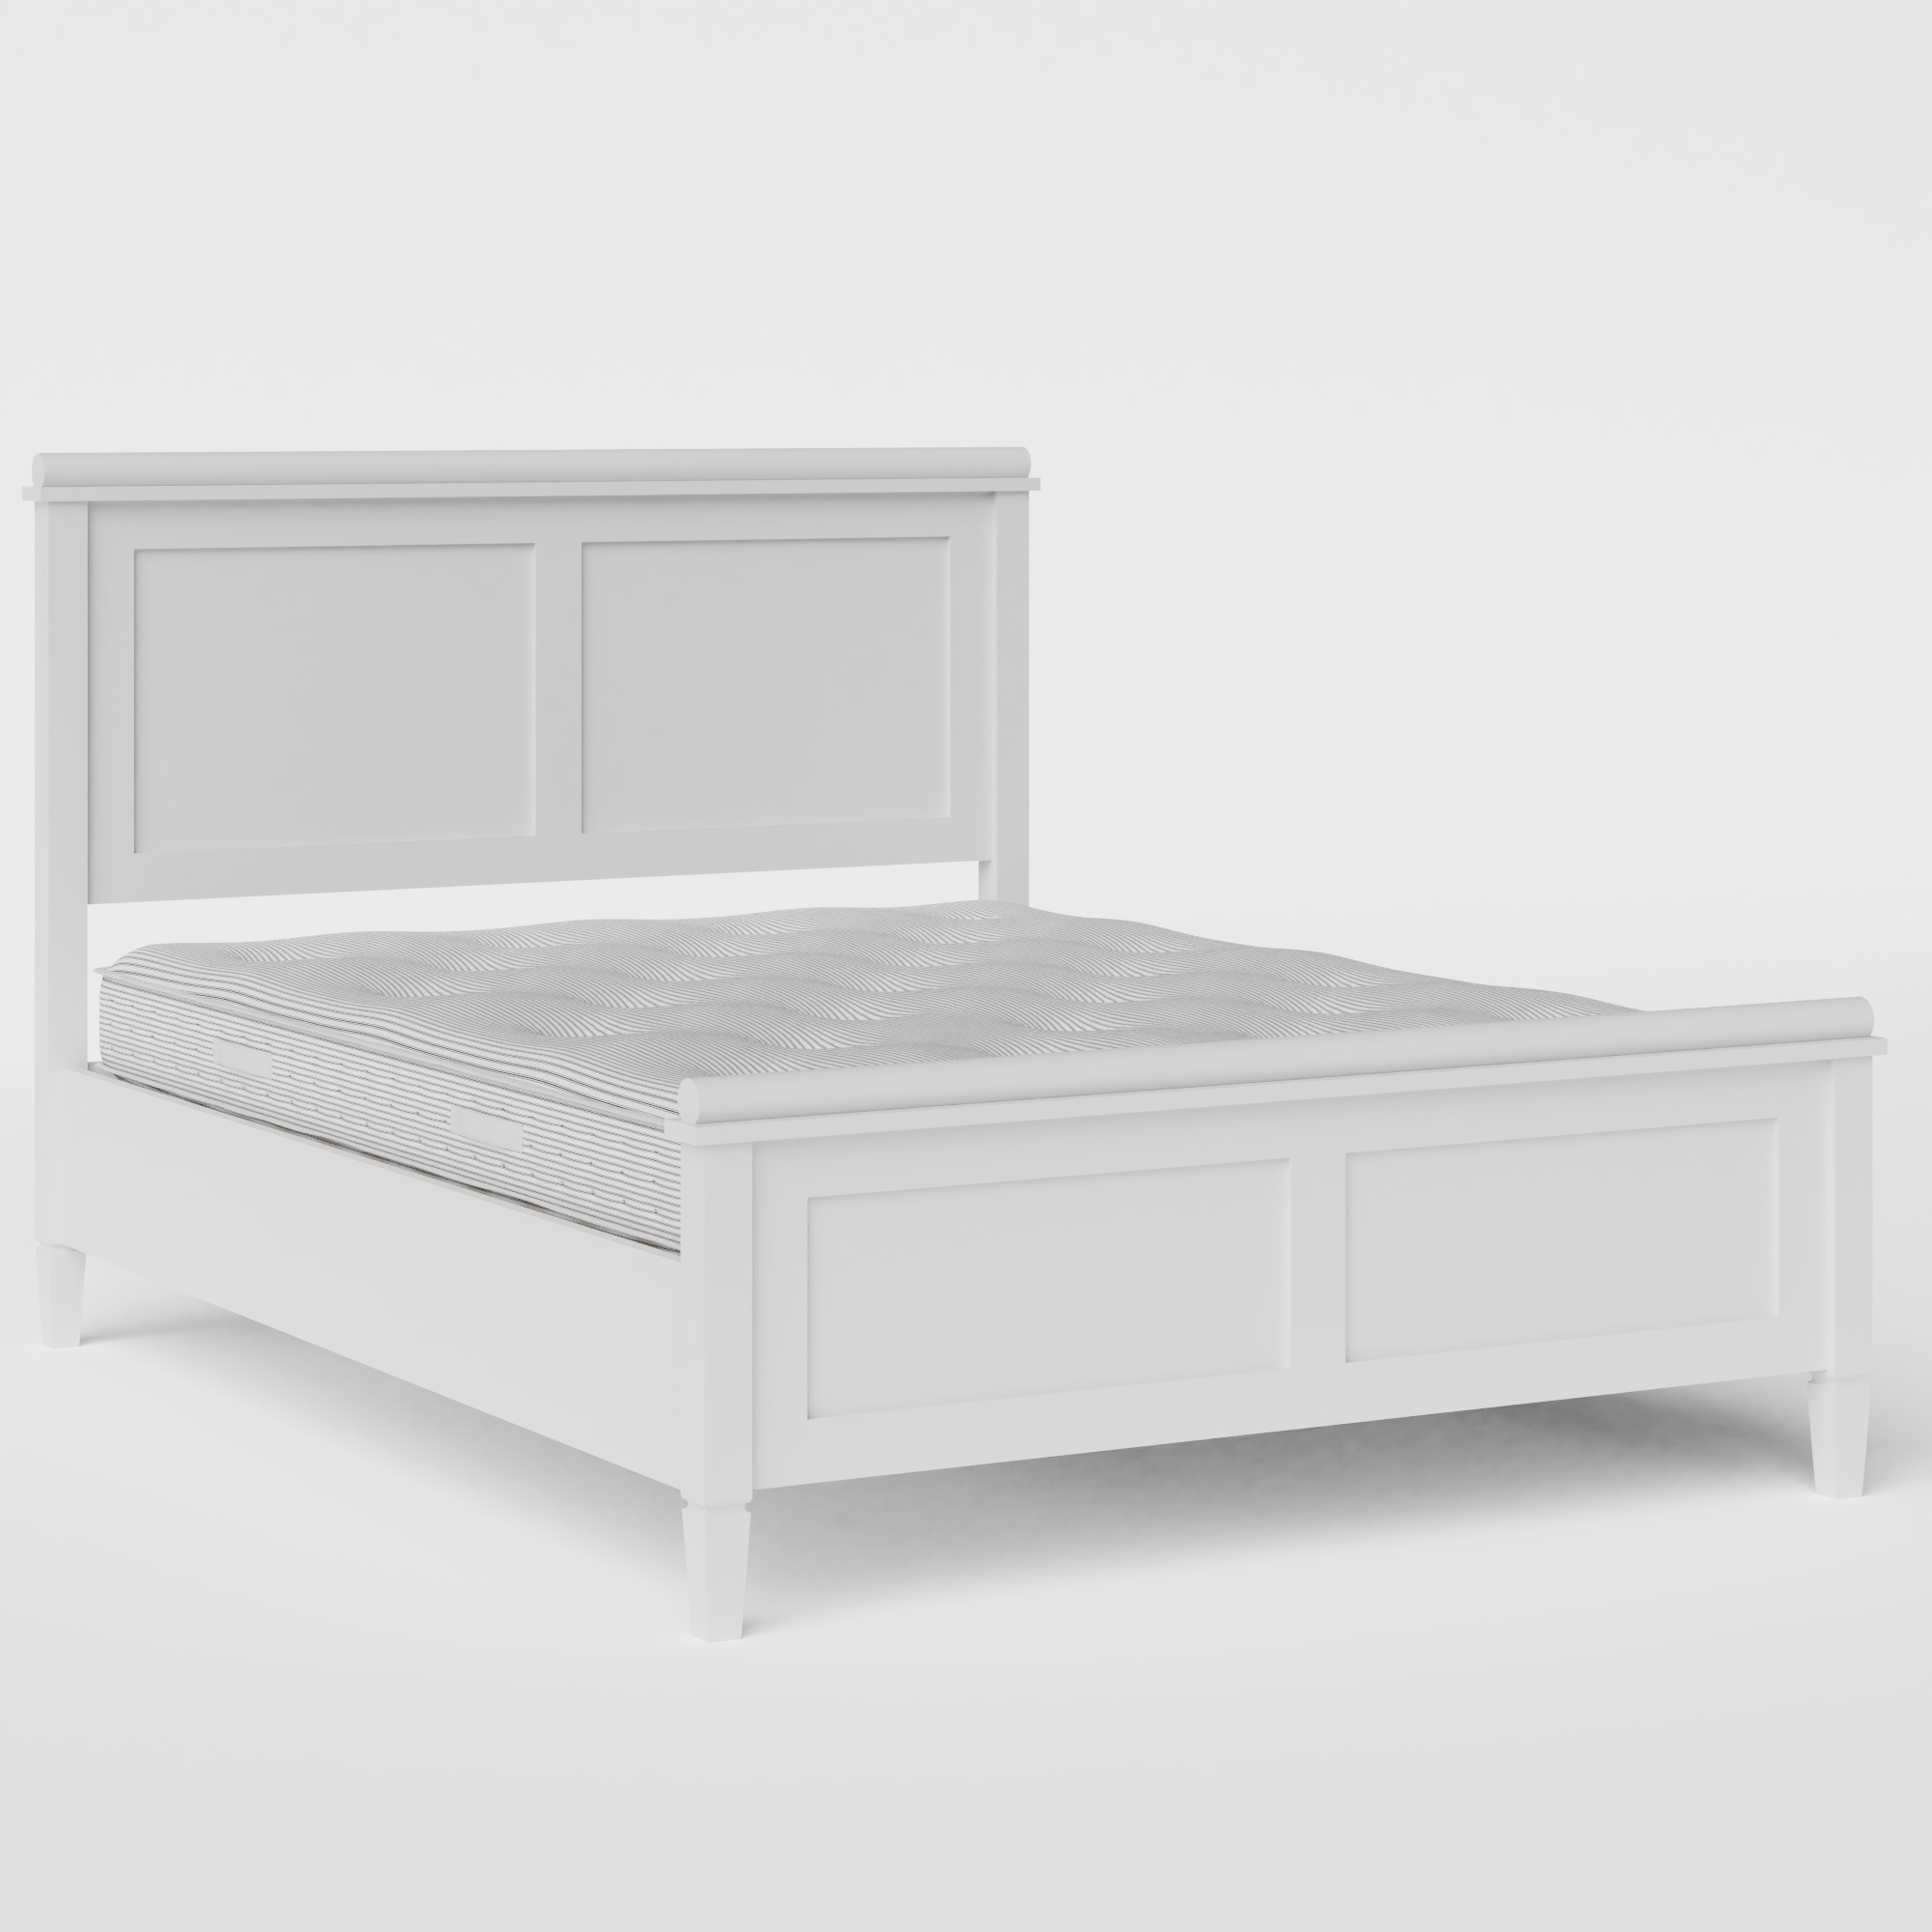 Nocturne Painted houten bed in wit met matras